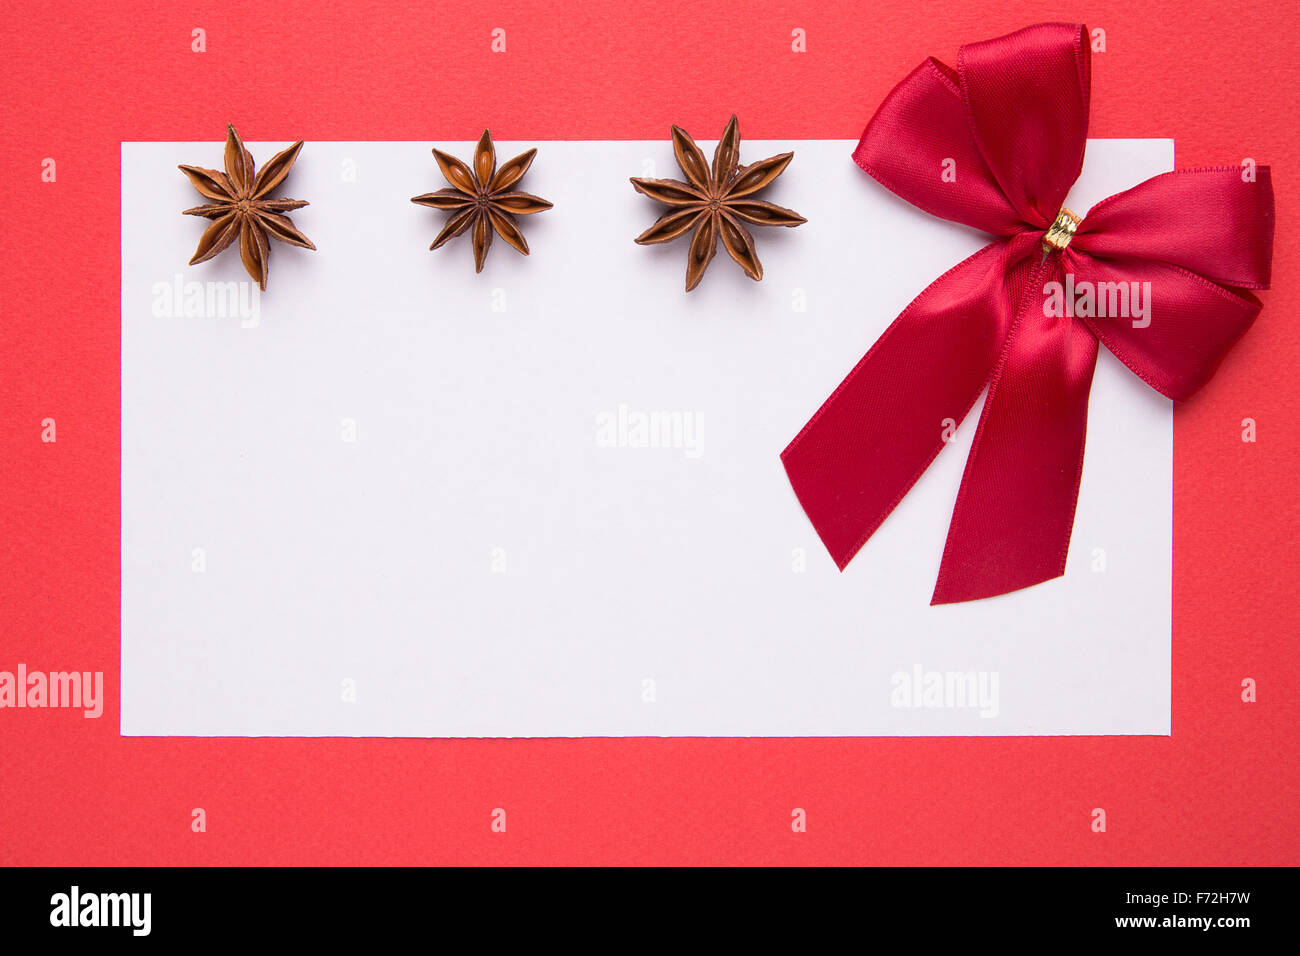 Blank scheda di natale con anice stella su sfondo rosso Foto Stock